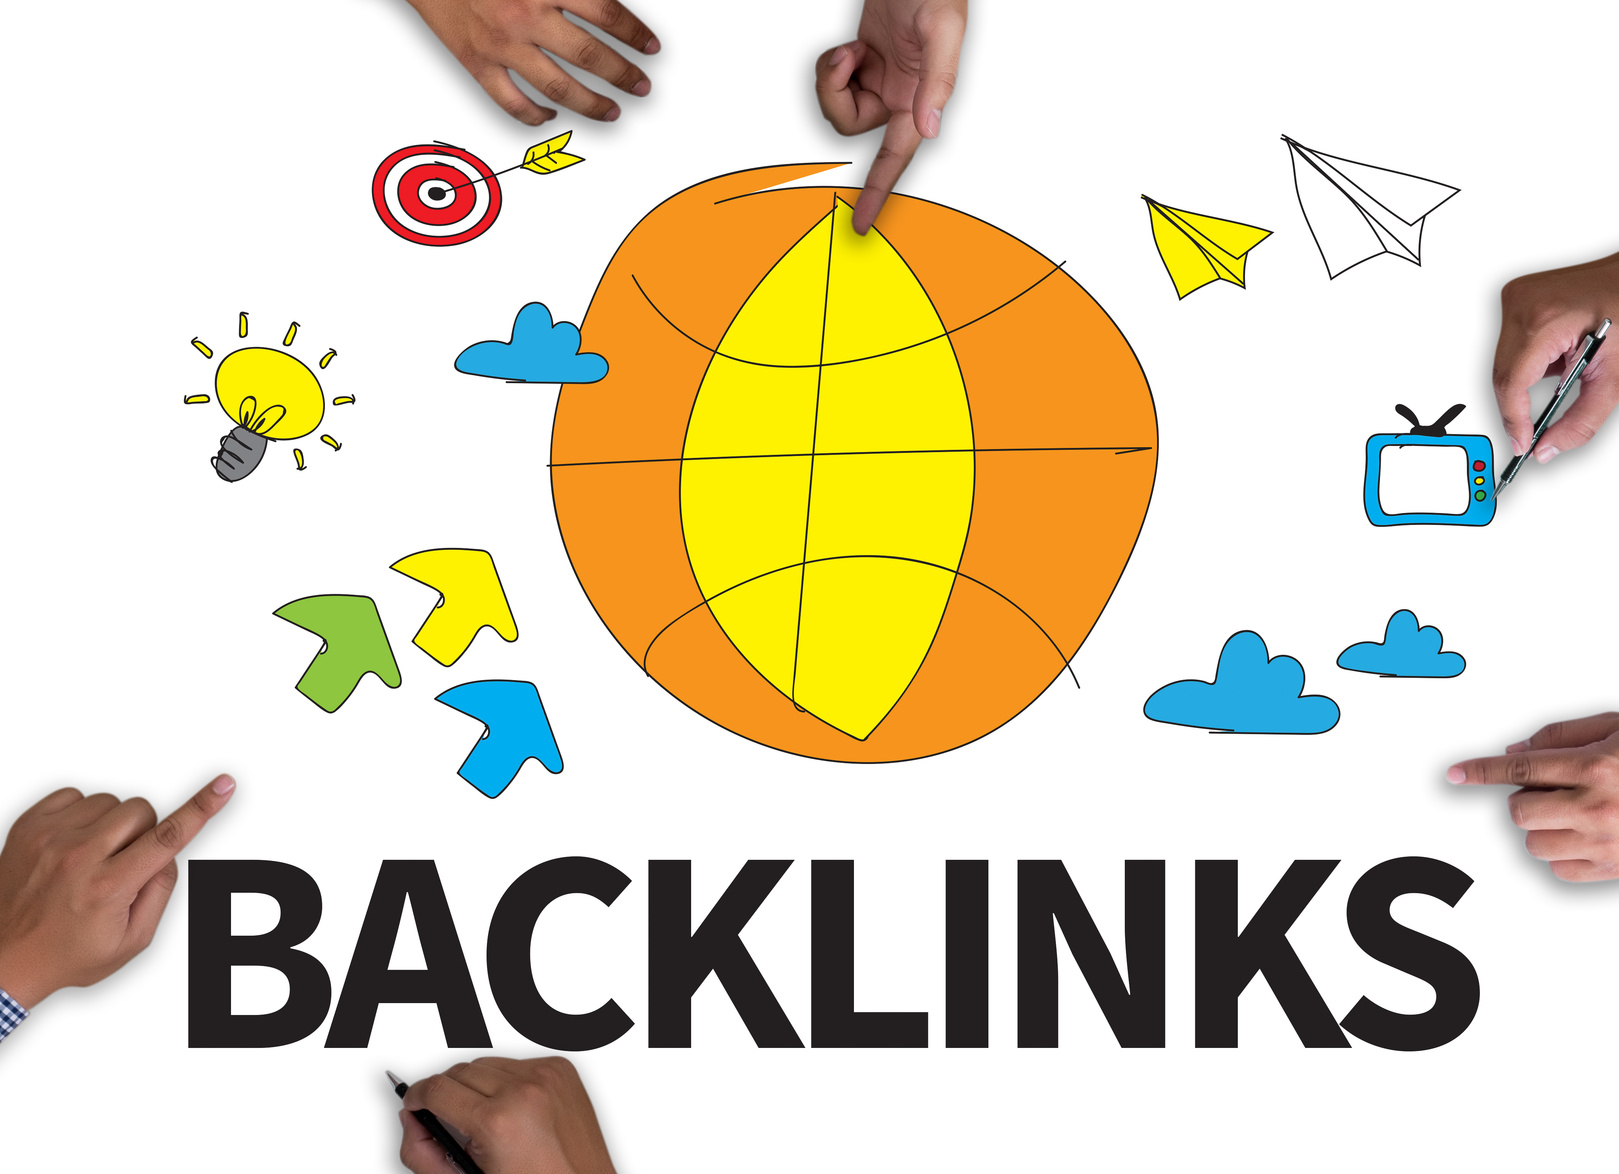 social backlinks